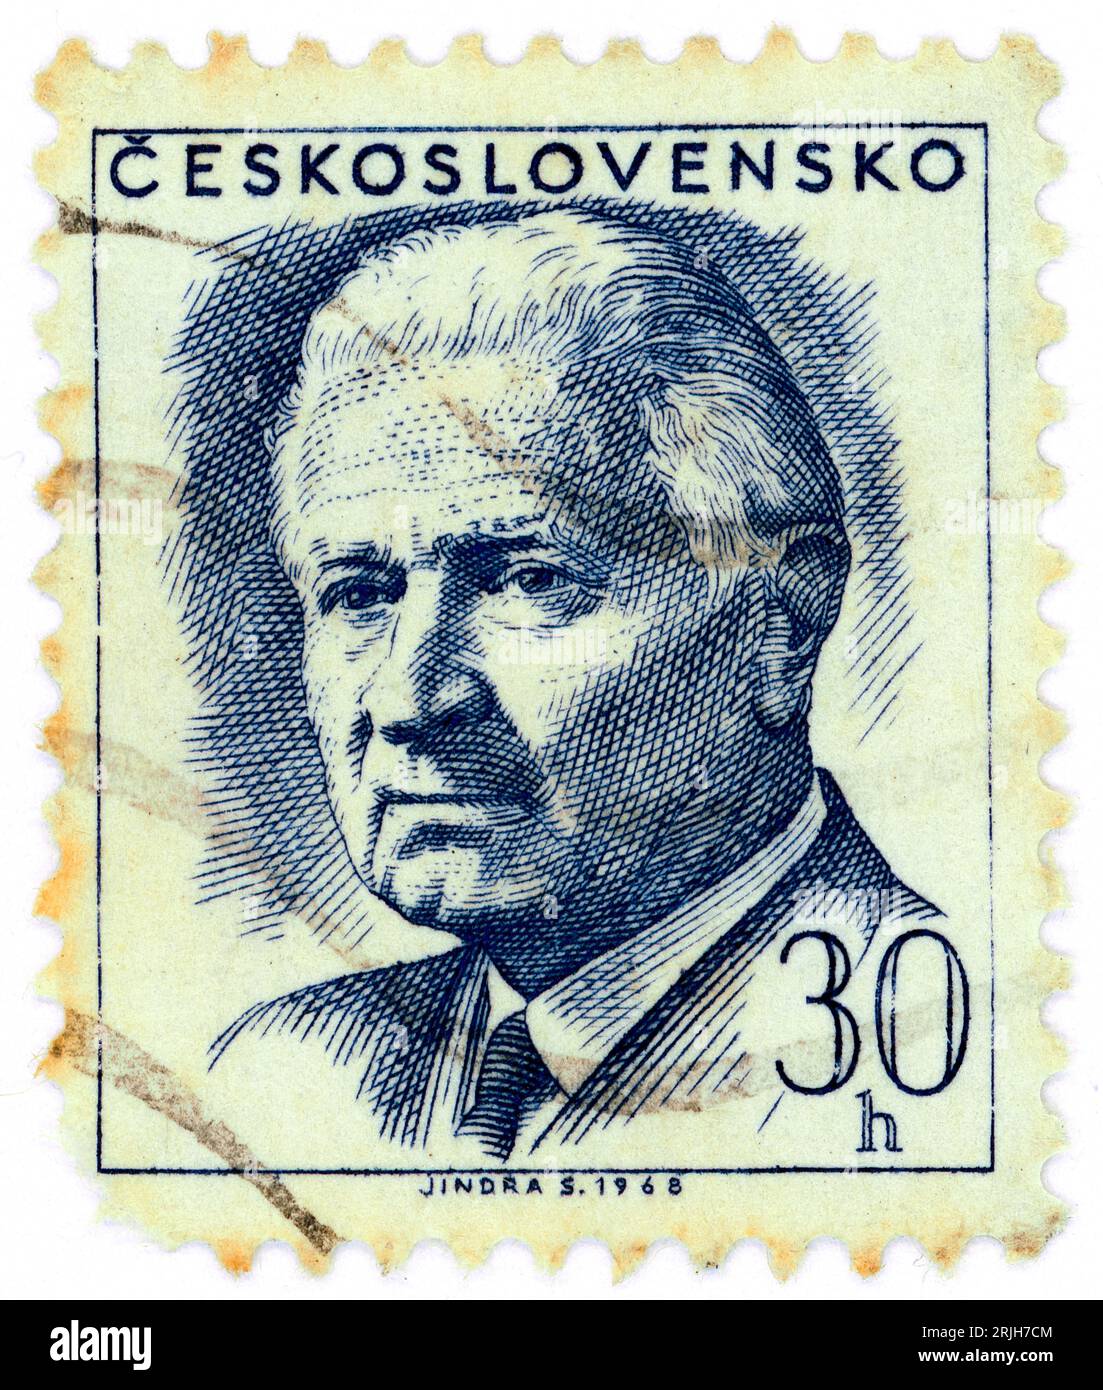 Ludvík Svoboda (1895 – 1979). Francobollo emesso in Cecoslovacchia nel 1968. Ludvík Svoboda è stato un generale e politico ceco. Combatté in entrambe le guerre mondiali, per le quali fu considerato un eroe nazionale, e in seguito fu presidente della Cecoslovacchia dal 1968 al 1975. Foto Stock